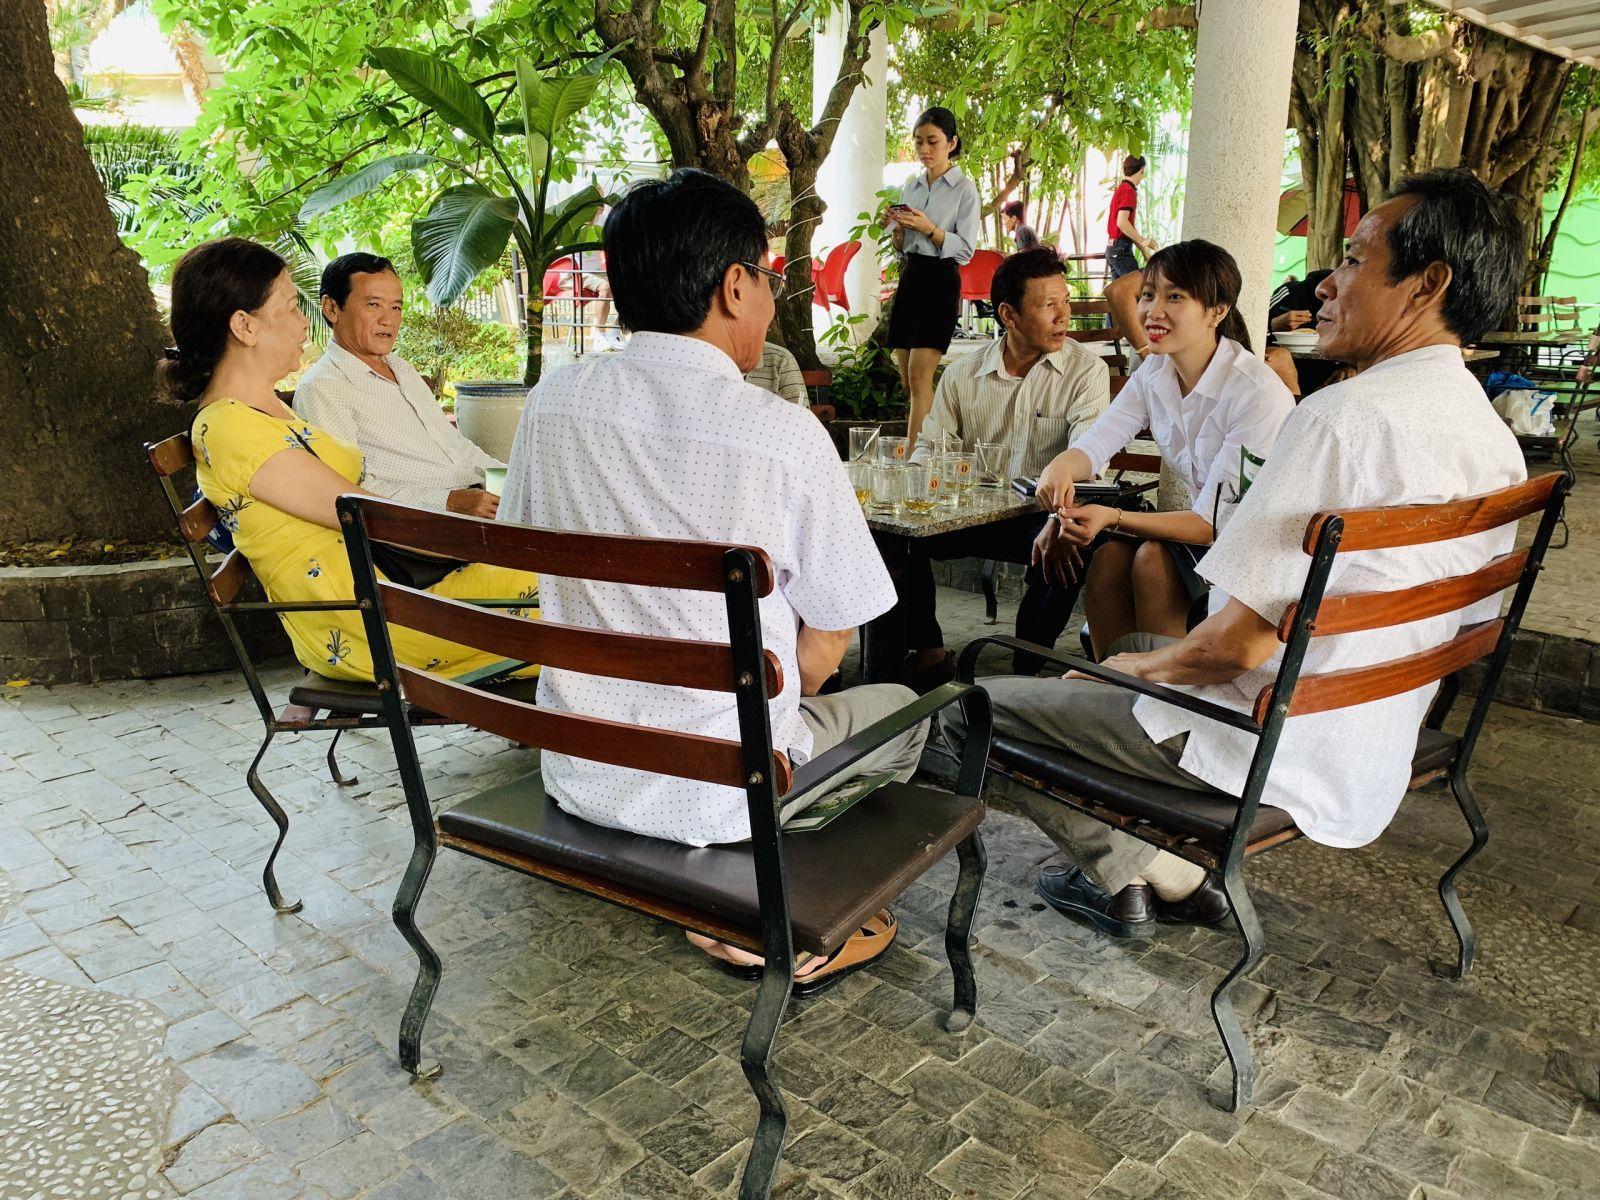 SỨC HÚT ĐẾN TỪ CÁC DỰ ÁN BẤT ĐỘNG SẢN TIỀM NĂNG TẠI KHU VỰC MIỀN TRUNG - Viet Nam Smart City